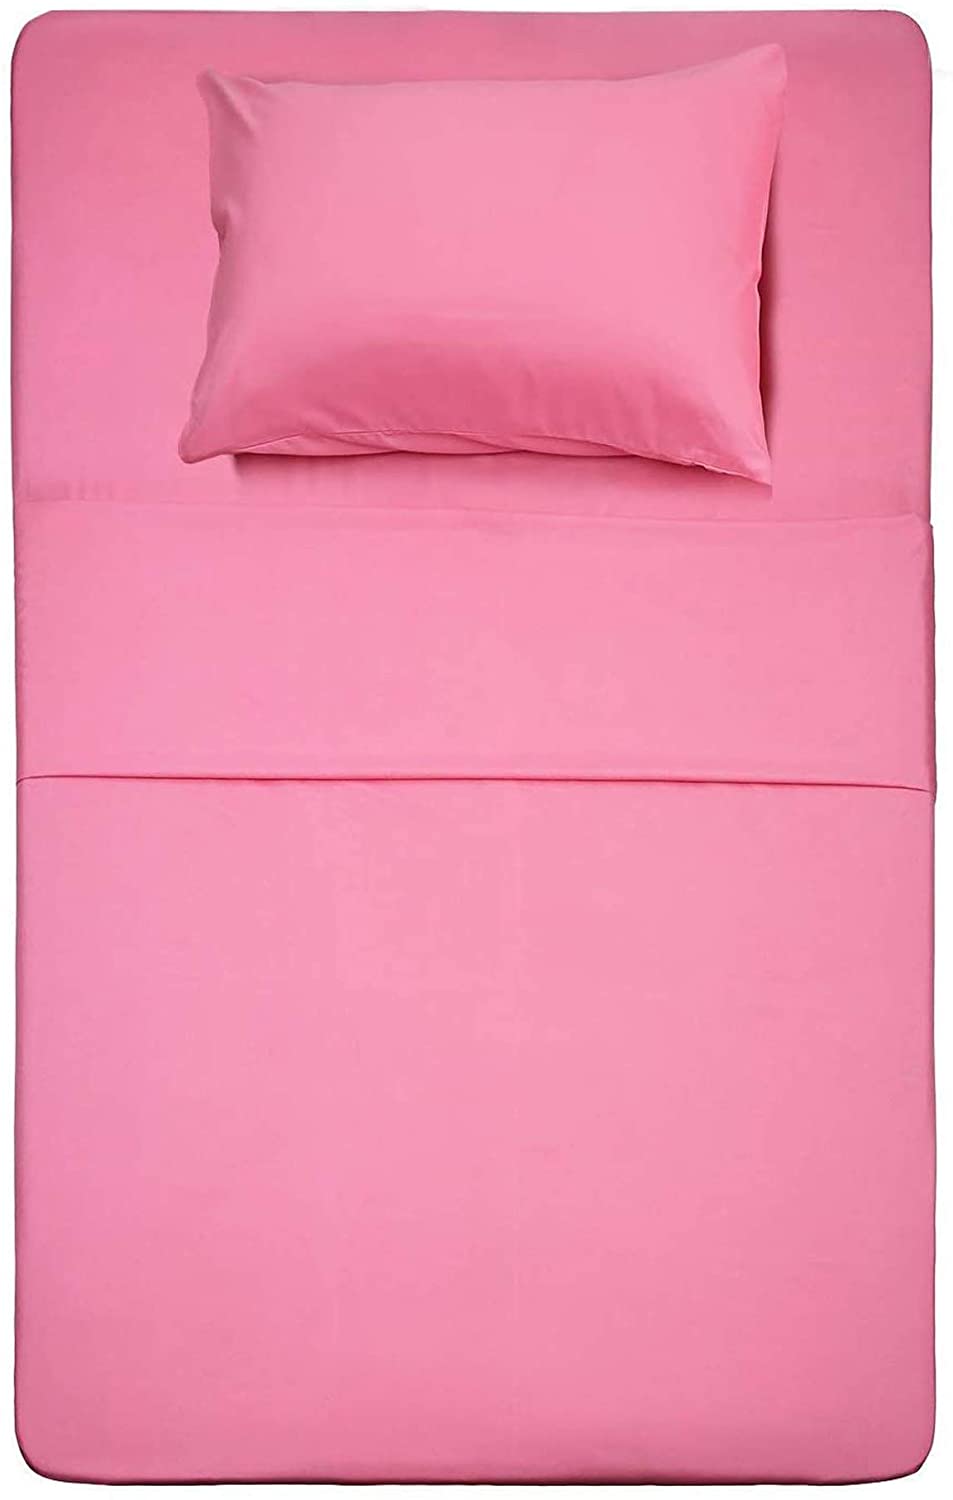 Details about   Damier Queen Bed Sheets Blush Pink Deep Pocket Sheet Set 4 Piece 1 Flat Sheet 